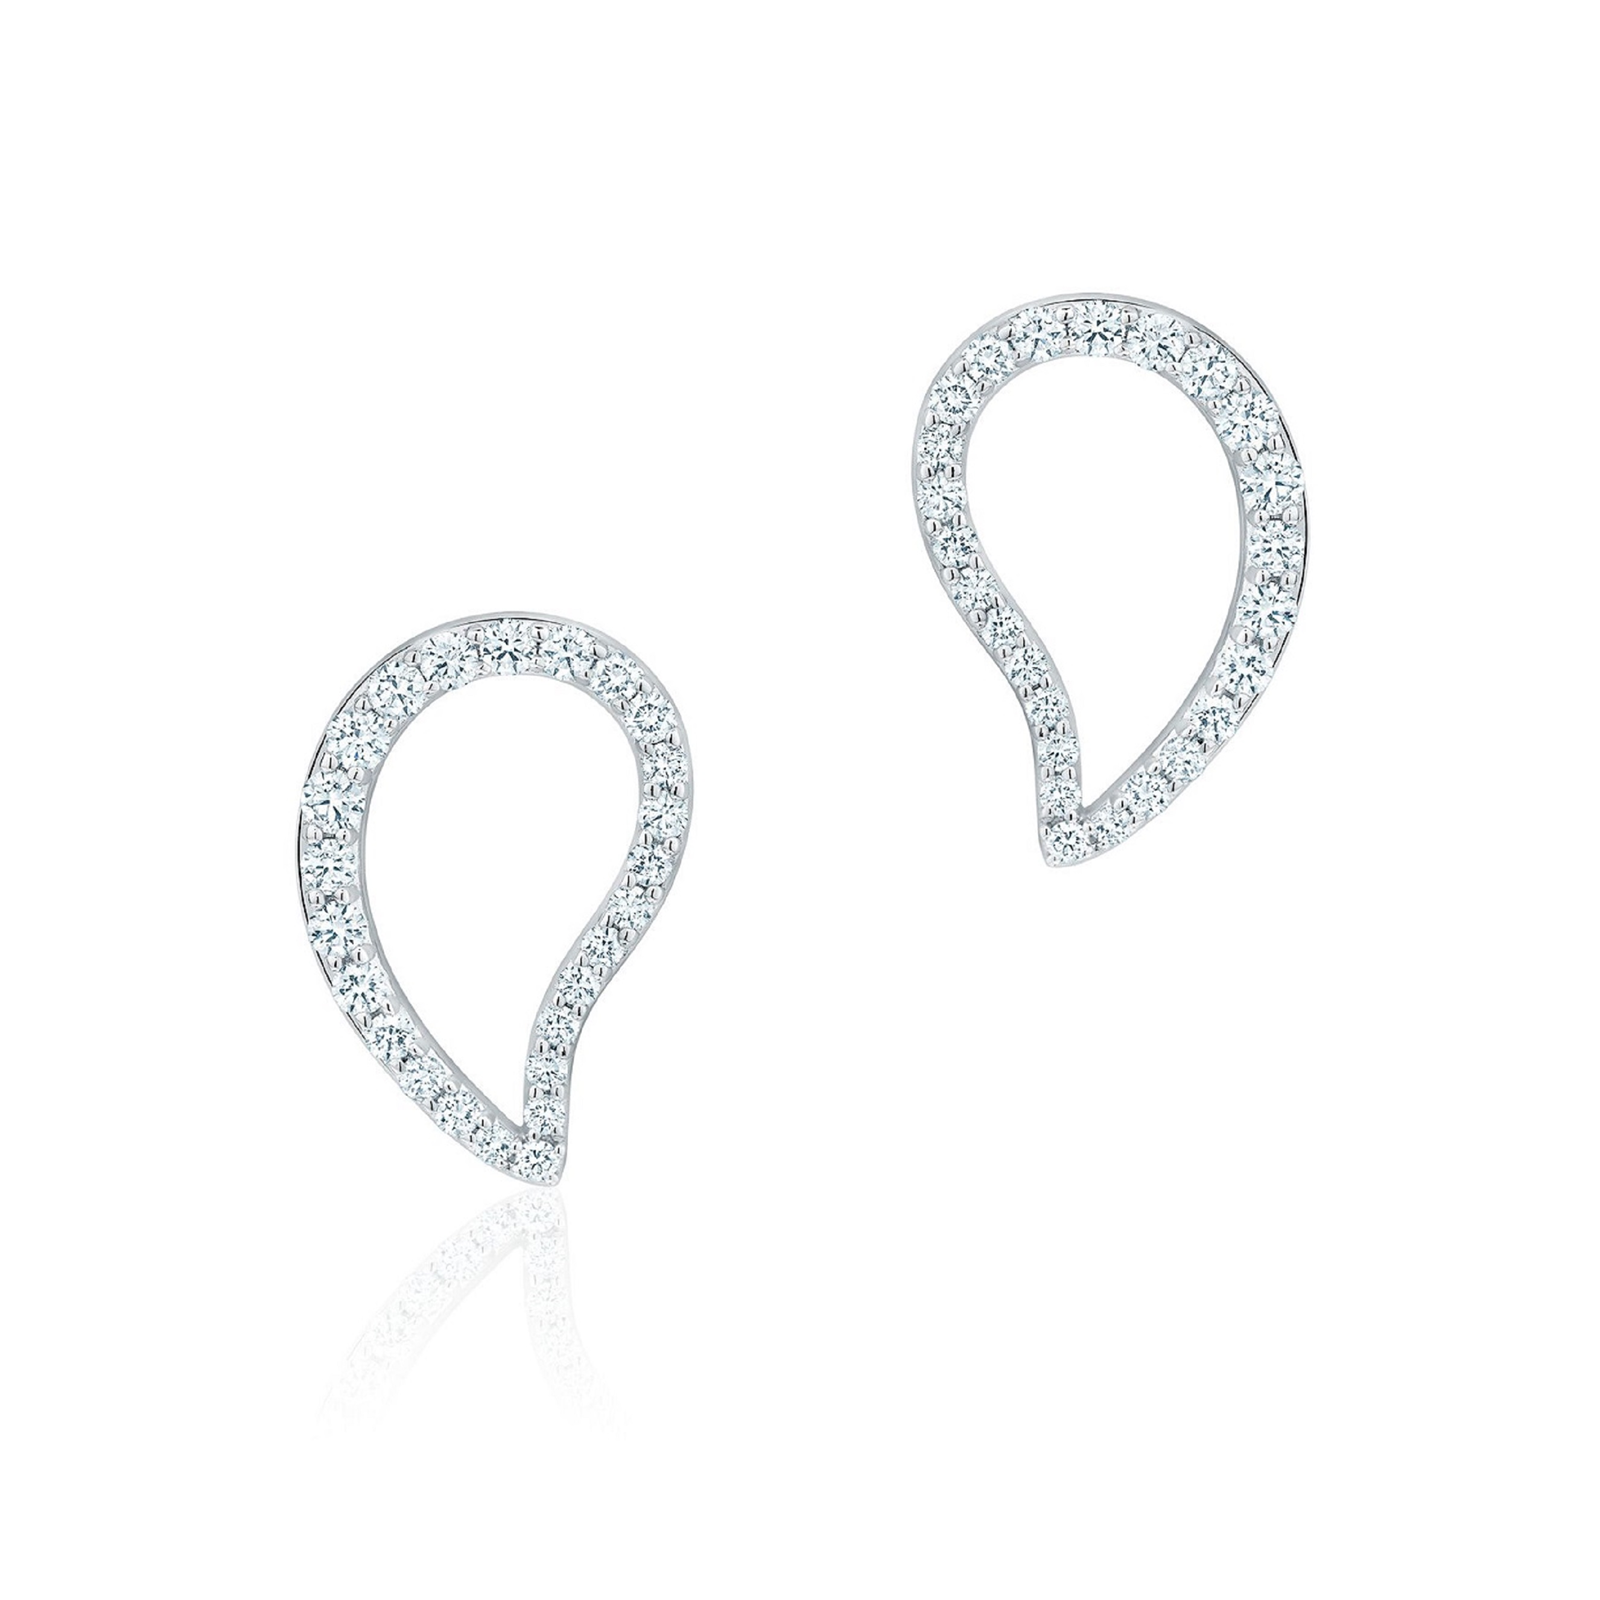 Birks Petale Large Diamond Stud Earrings